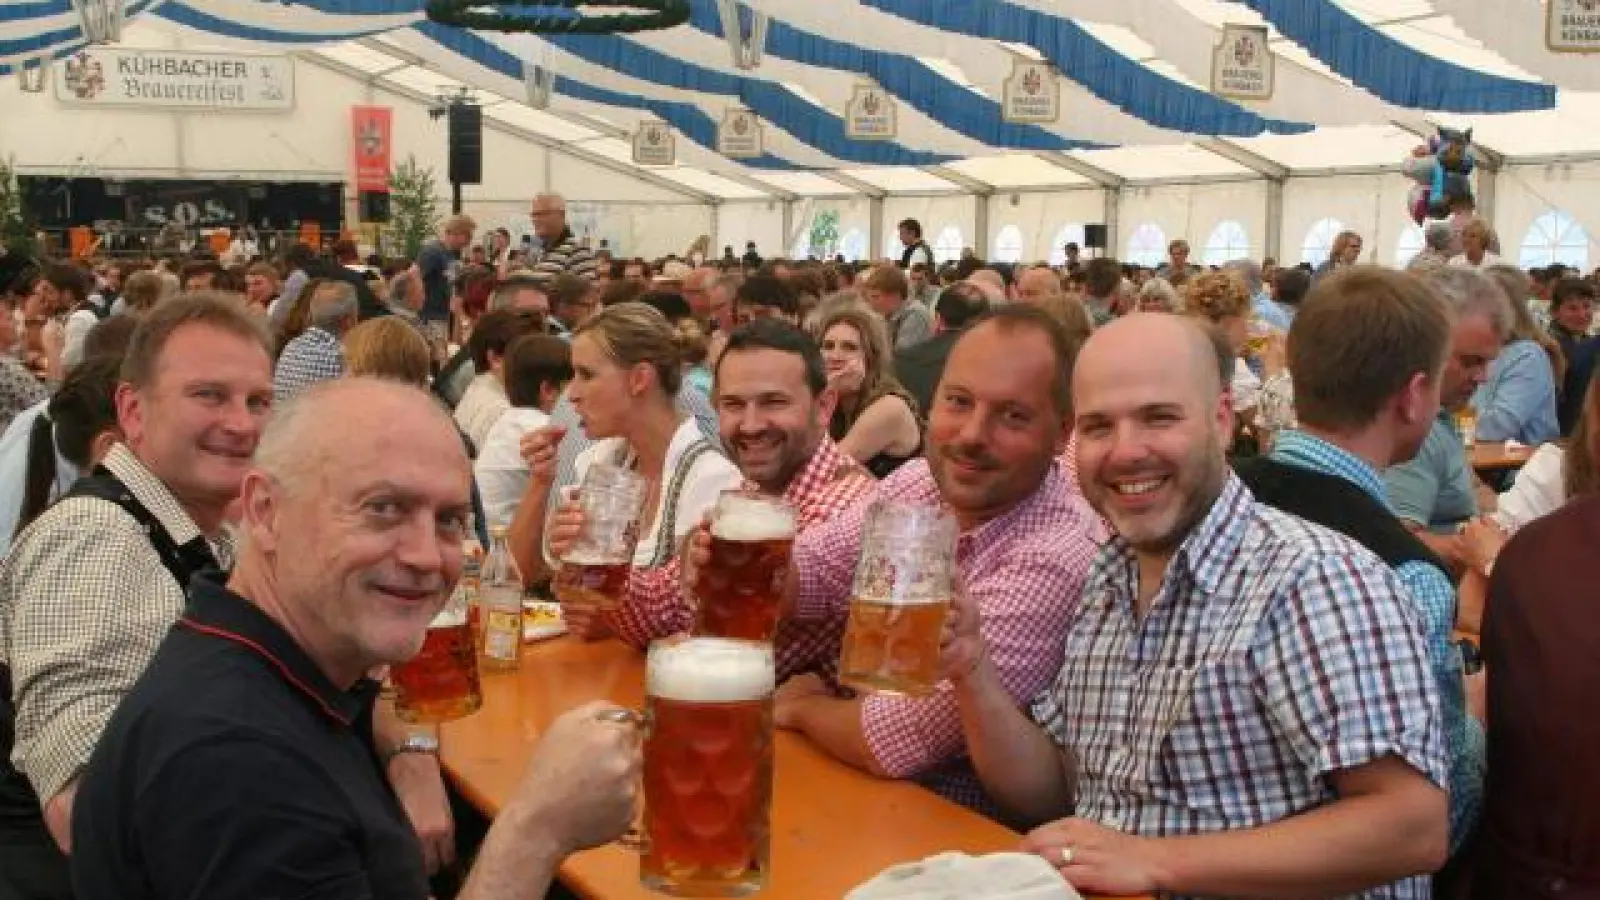 Solche Bilder   gibt es heuer nicht vom Brauereifest in Kühbach. Auch nicht von vielen anderen Großveranstaltungen, weil sie wegen Corona nicht stattfinden werden. Darunter auch die Historischen Markttage in Aichach und Pöttmes. 	Foto: Archiv (Foto: Archiv)